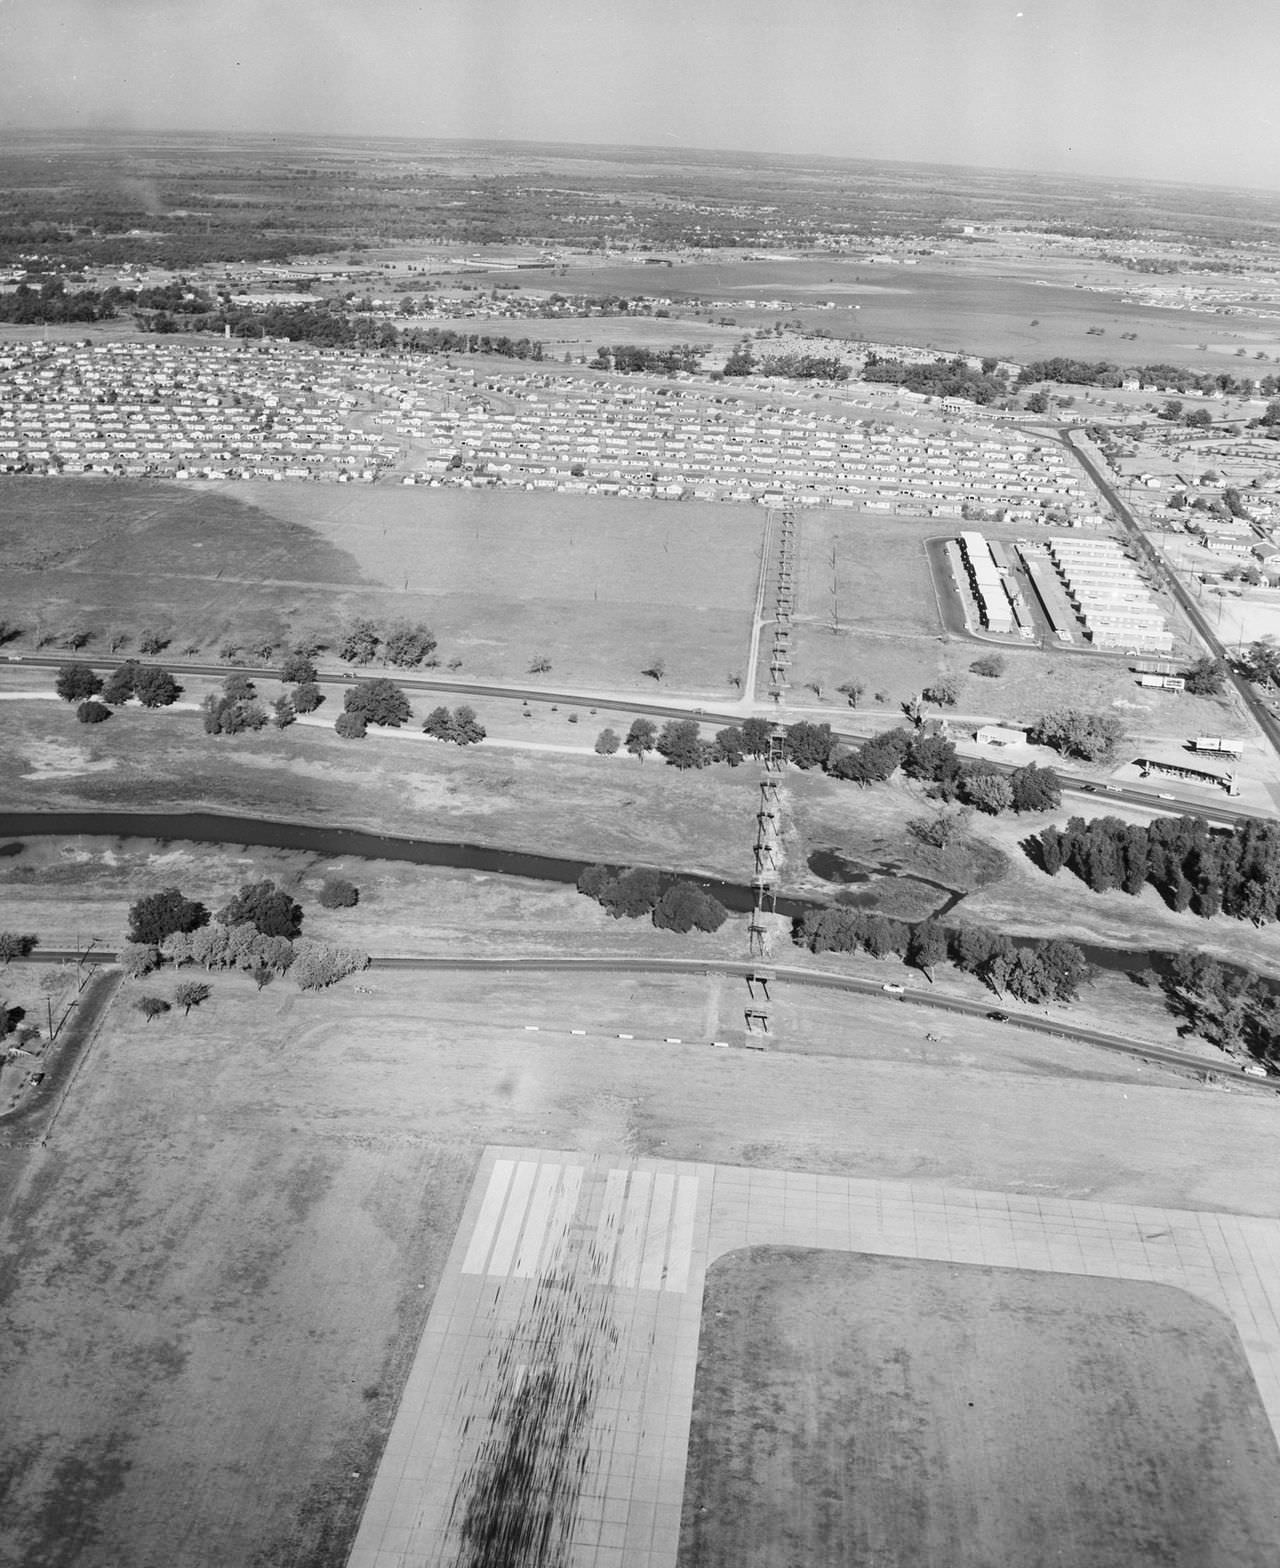 Dallas Love Field, Dallas, Texas, 1955